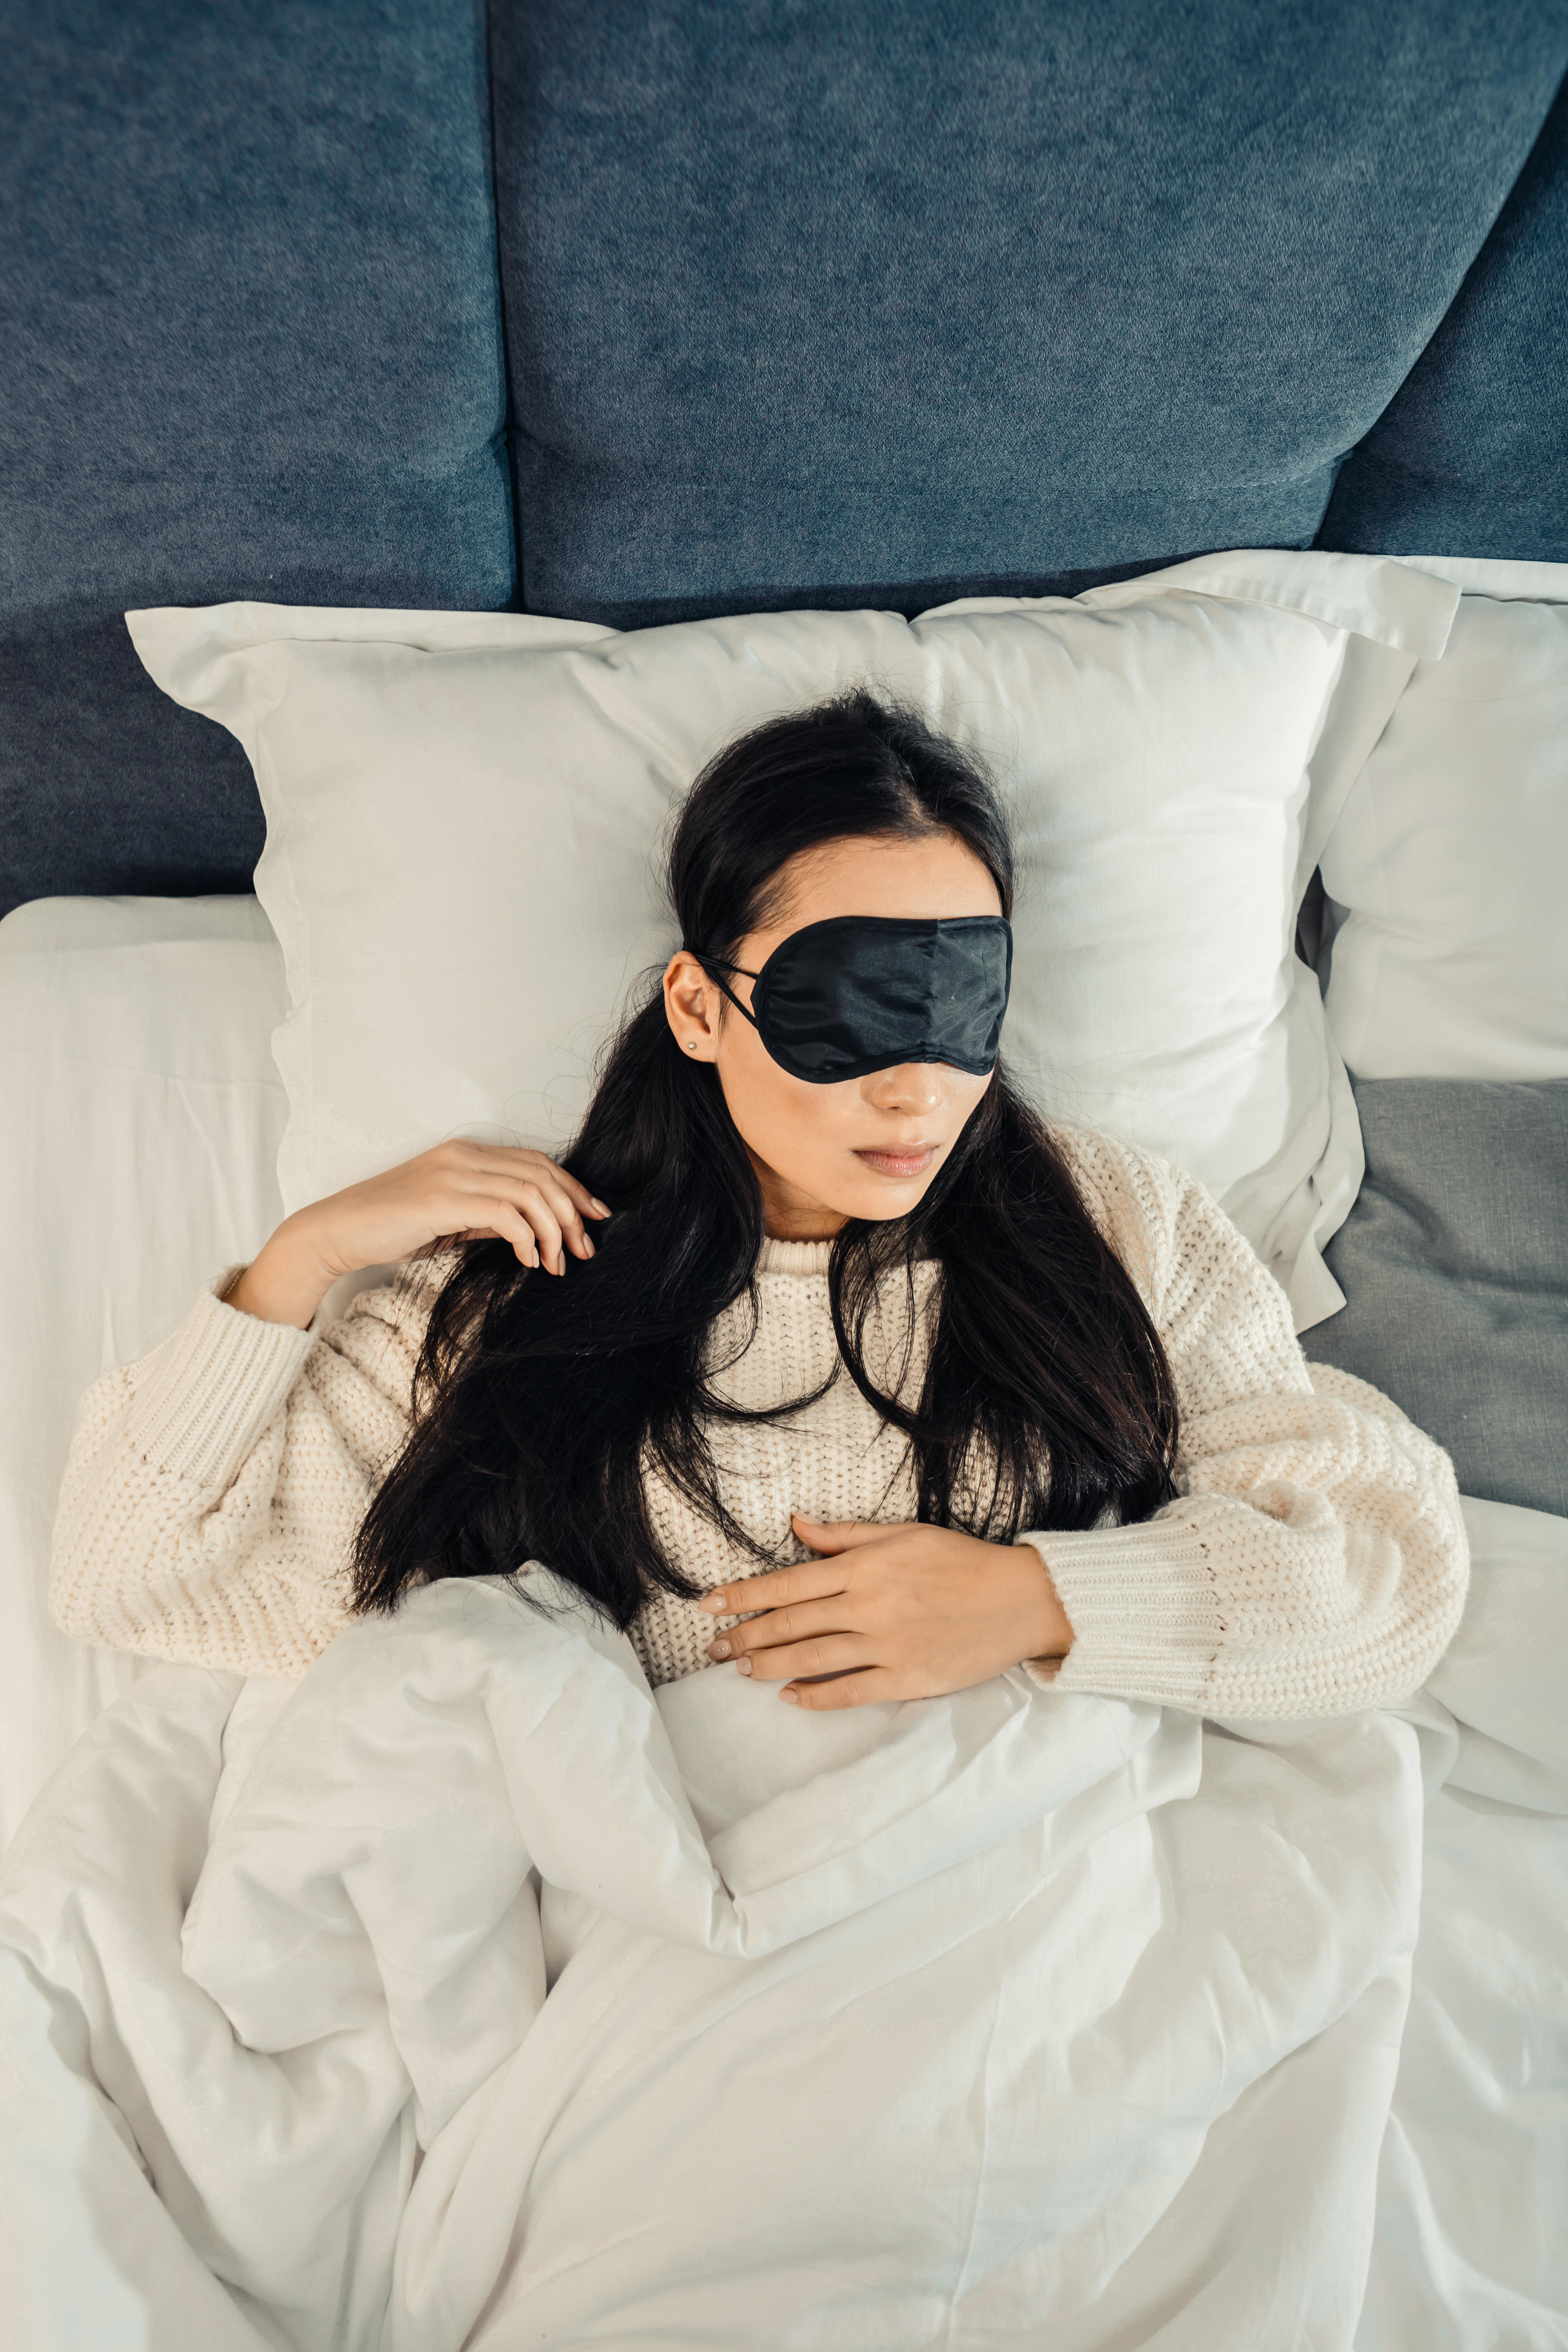 Woman in bed wearing eye mask